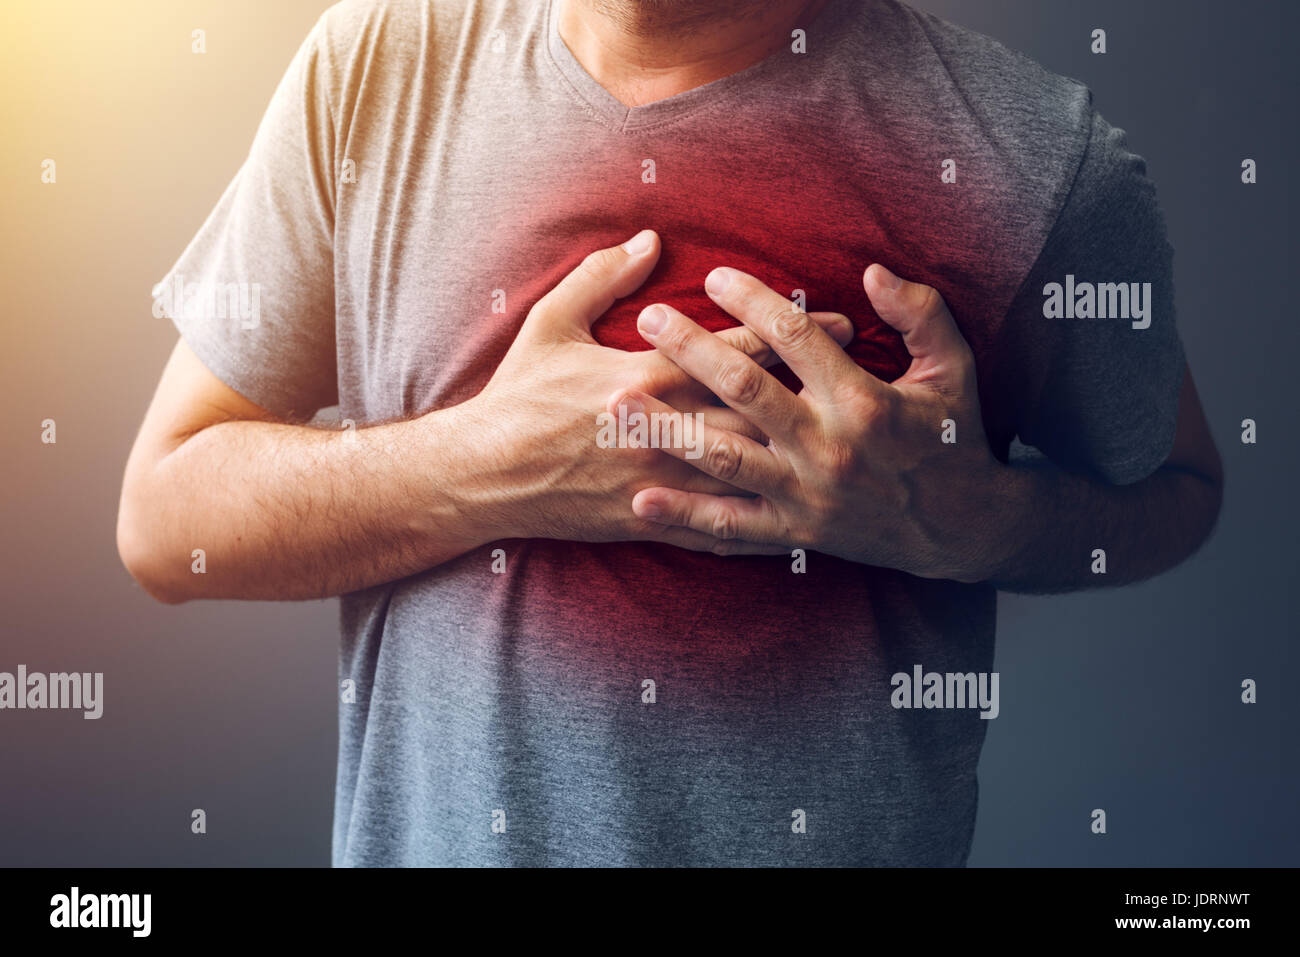 Männchen mit Herzinfarkt oder Herz brennen-Zustand, Gesundheit und Medizin-Konzept Stockfoto